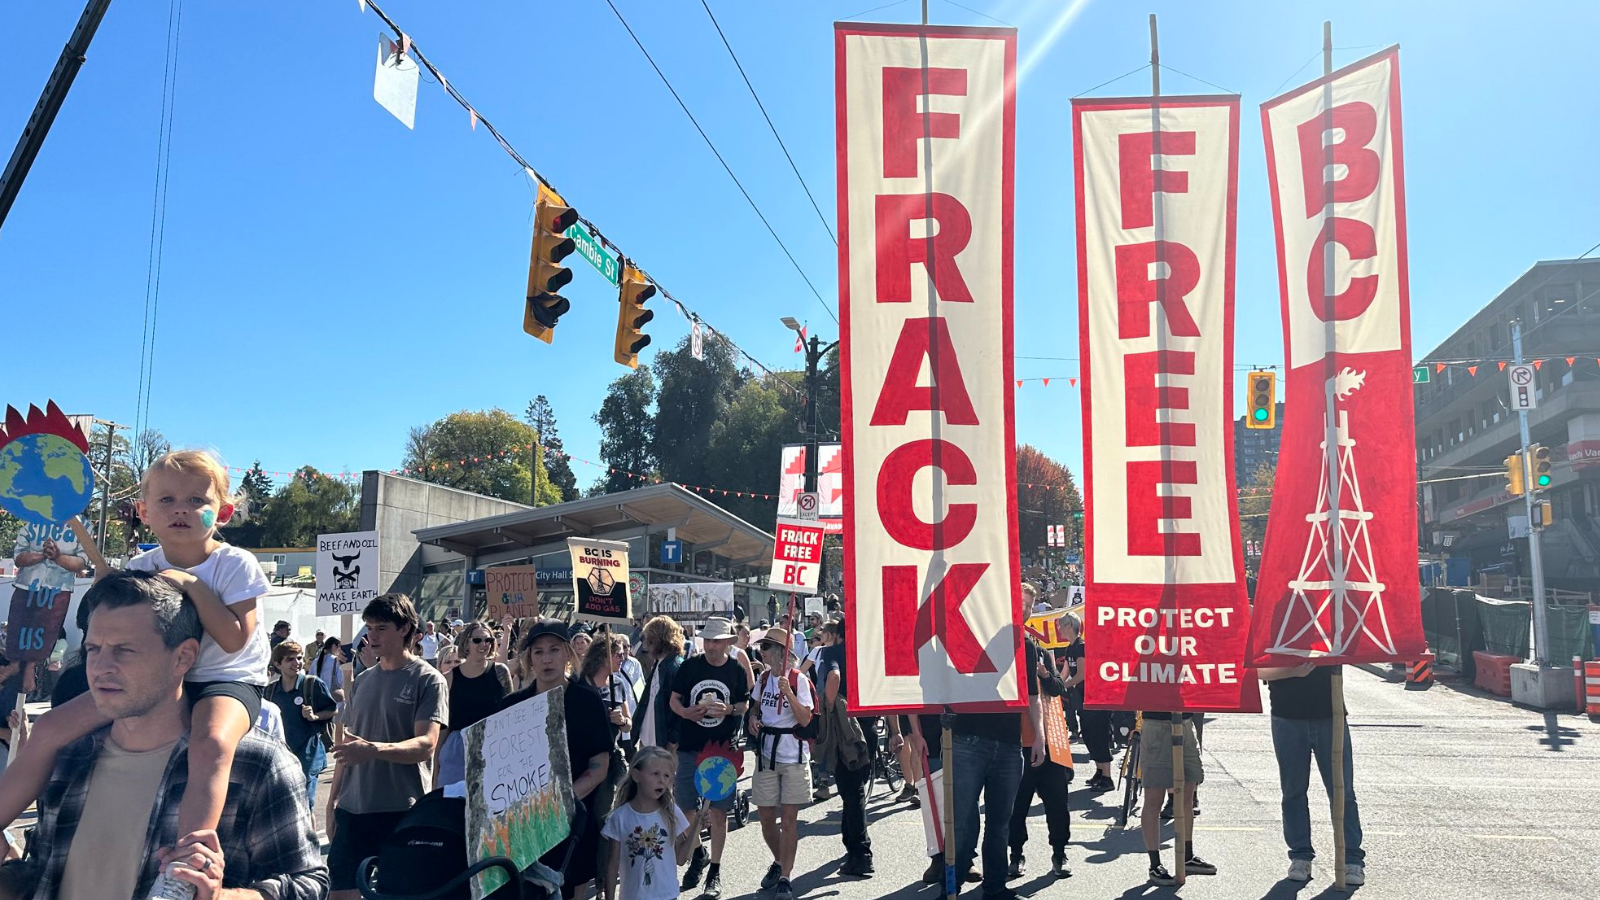 Rally Against Fracking